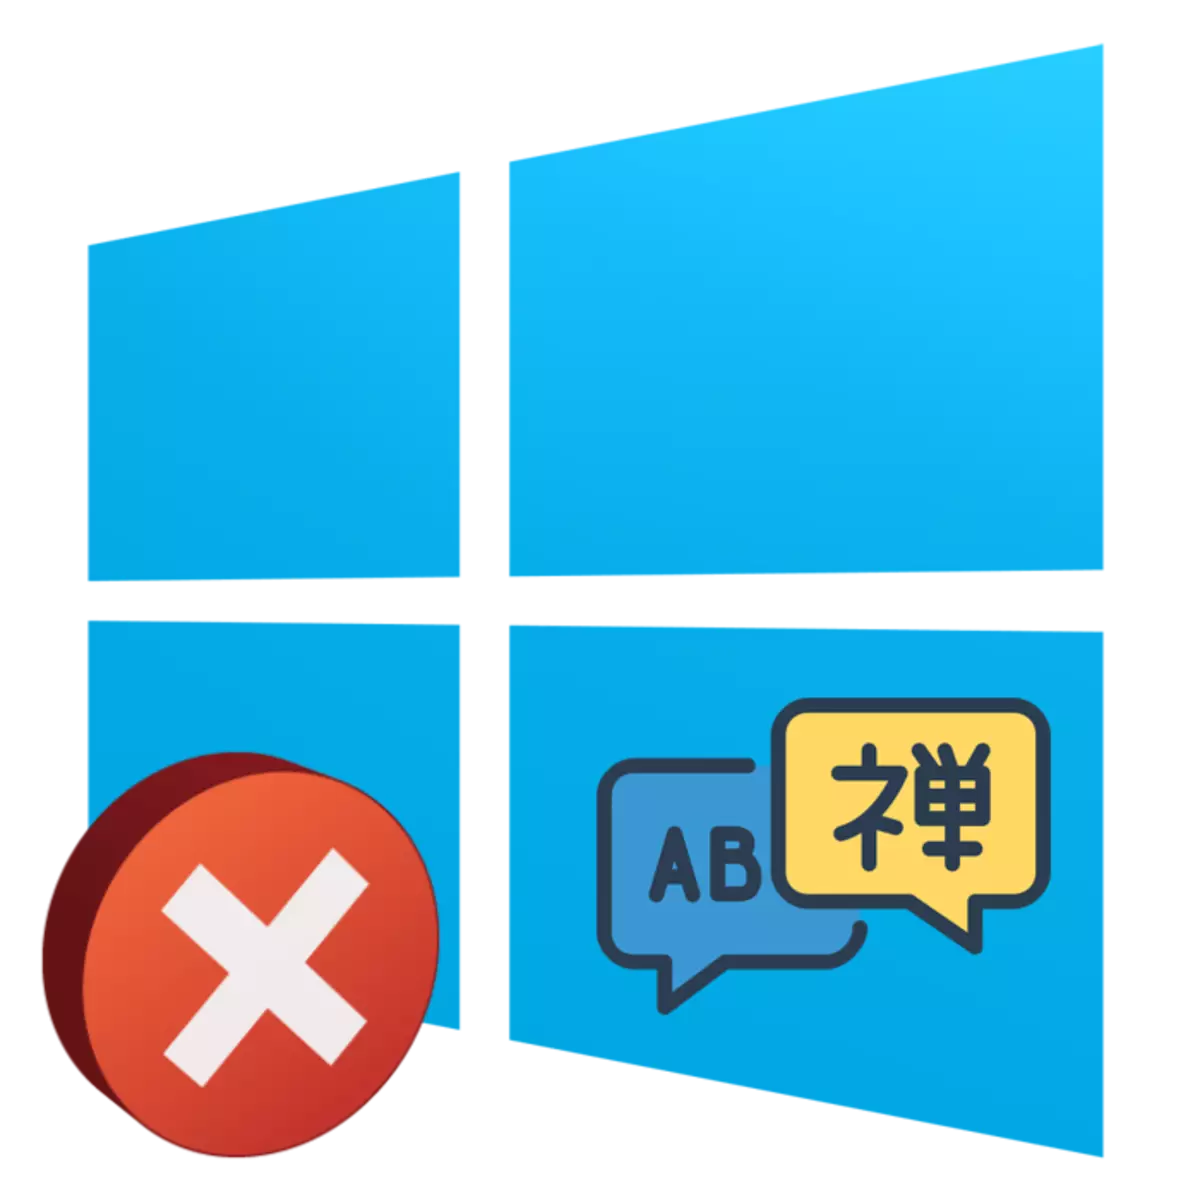 በ Windows 10 ውስጥ ሰሌዳ ላይ የቋንቋ